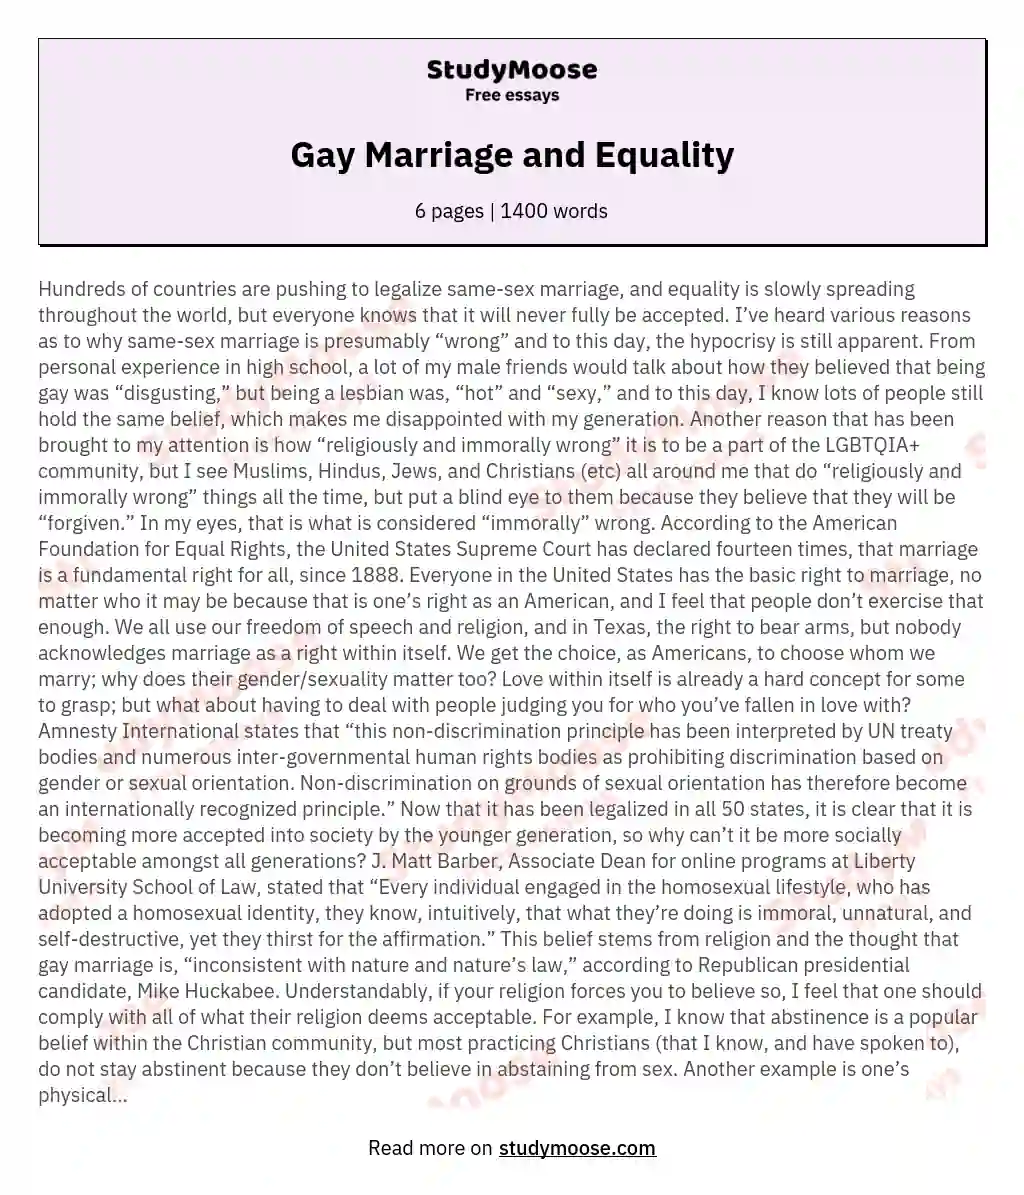 gay rights essay ideas